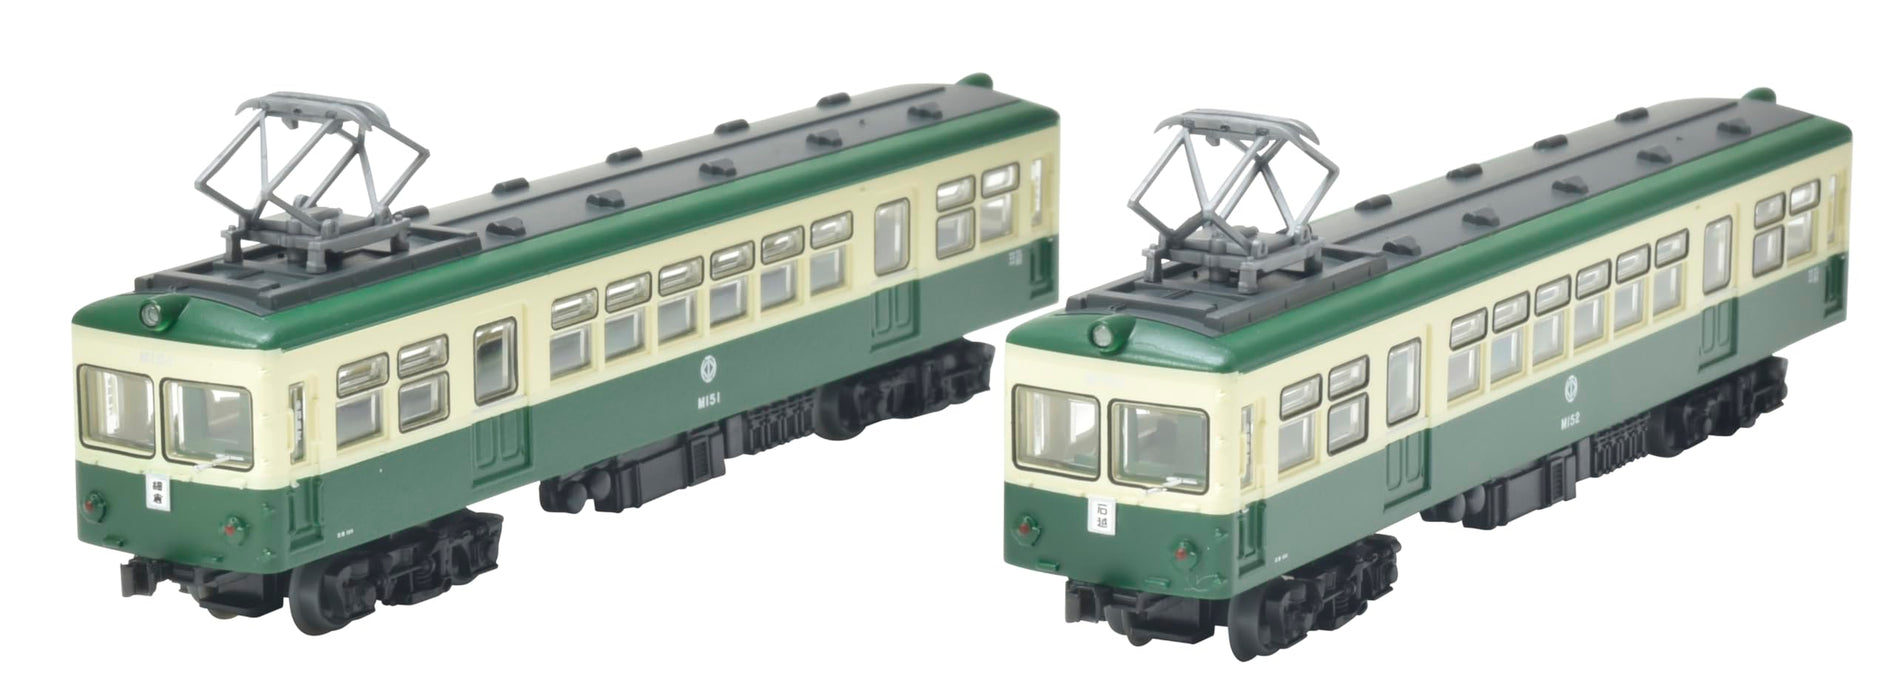 Tomytec Railway Collection Kurihara Elektrisches 2-Wagen-Set, Cremegrün, Dioramazubehör